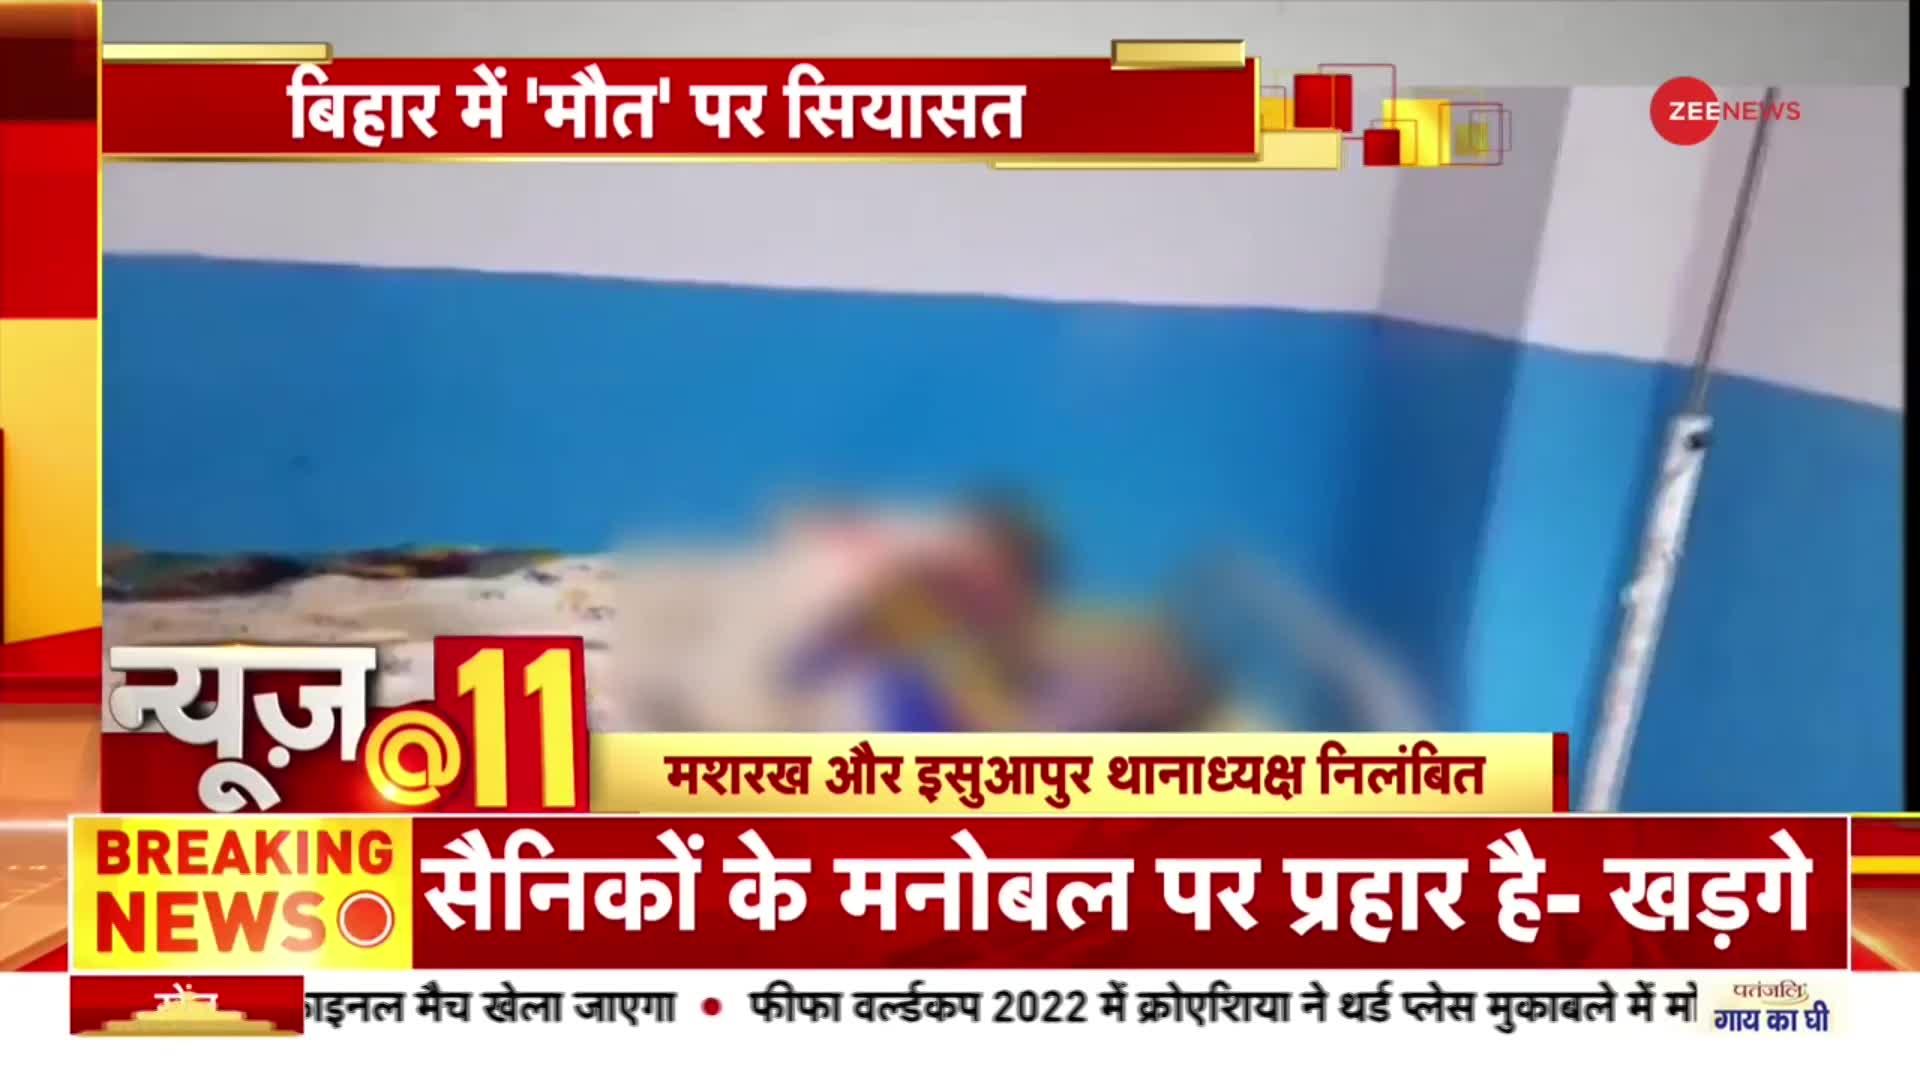 News@11: Bihar में जहरीली शराब से मरने वालों की संख्या बढ़कर 78 हुई, मशरख-इसुआपुर थानाध्यक्ष निलंबित